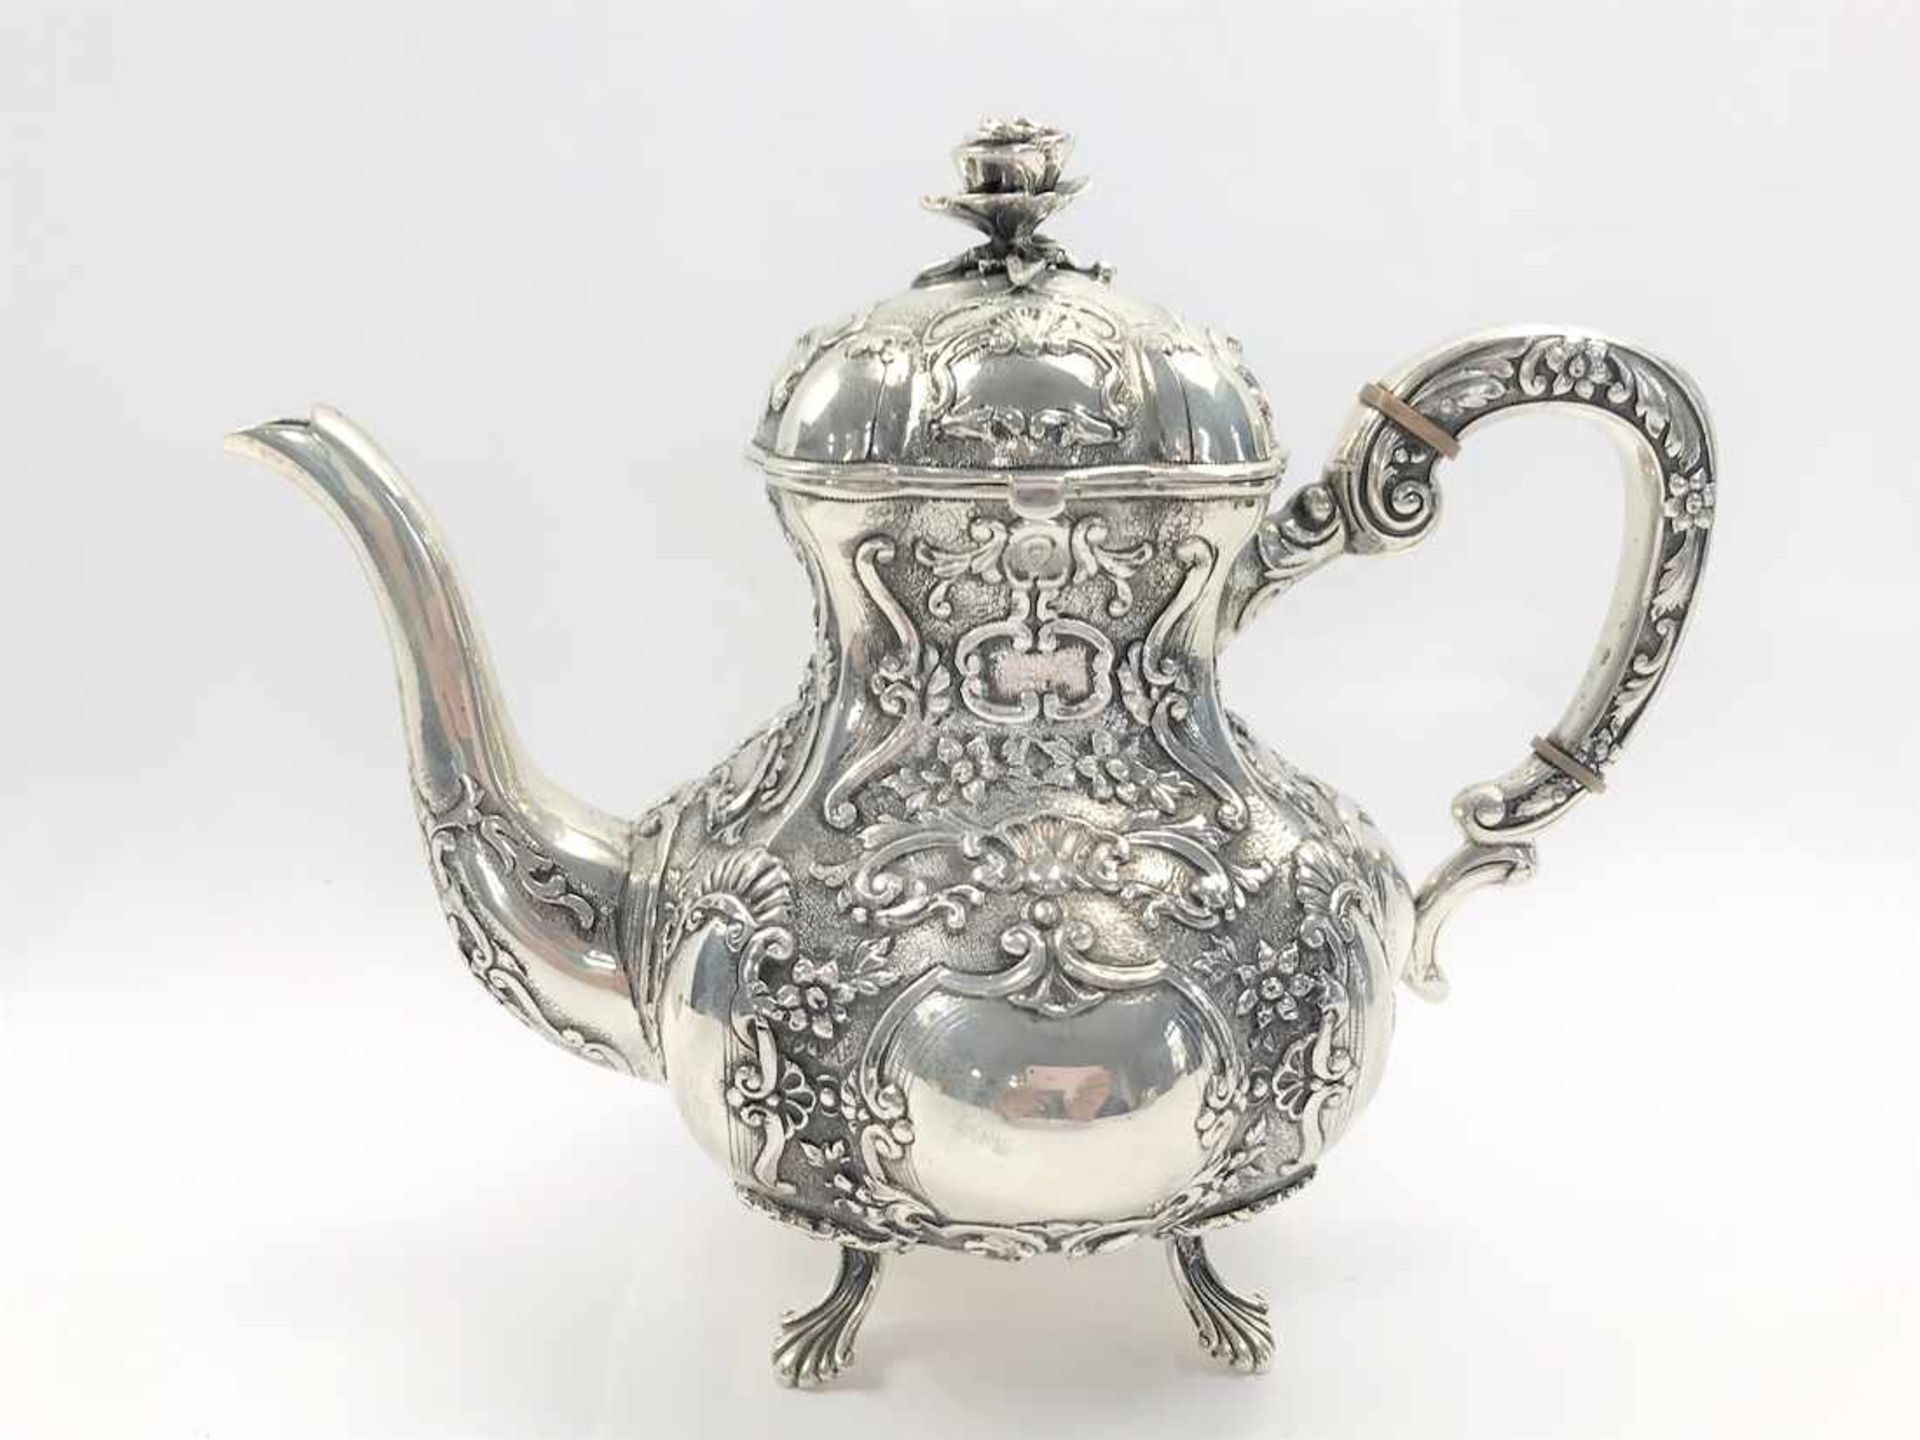 Kaffee- oder Teekanne mit reichem, reliefierten floralen Dekor in 830er Silber, leere